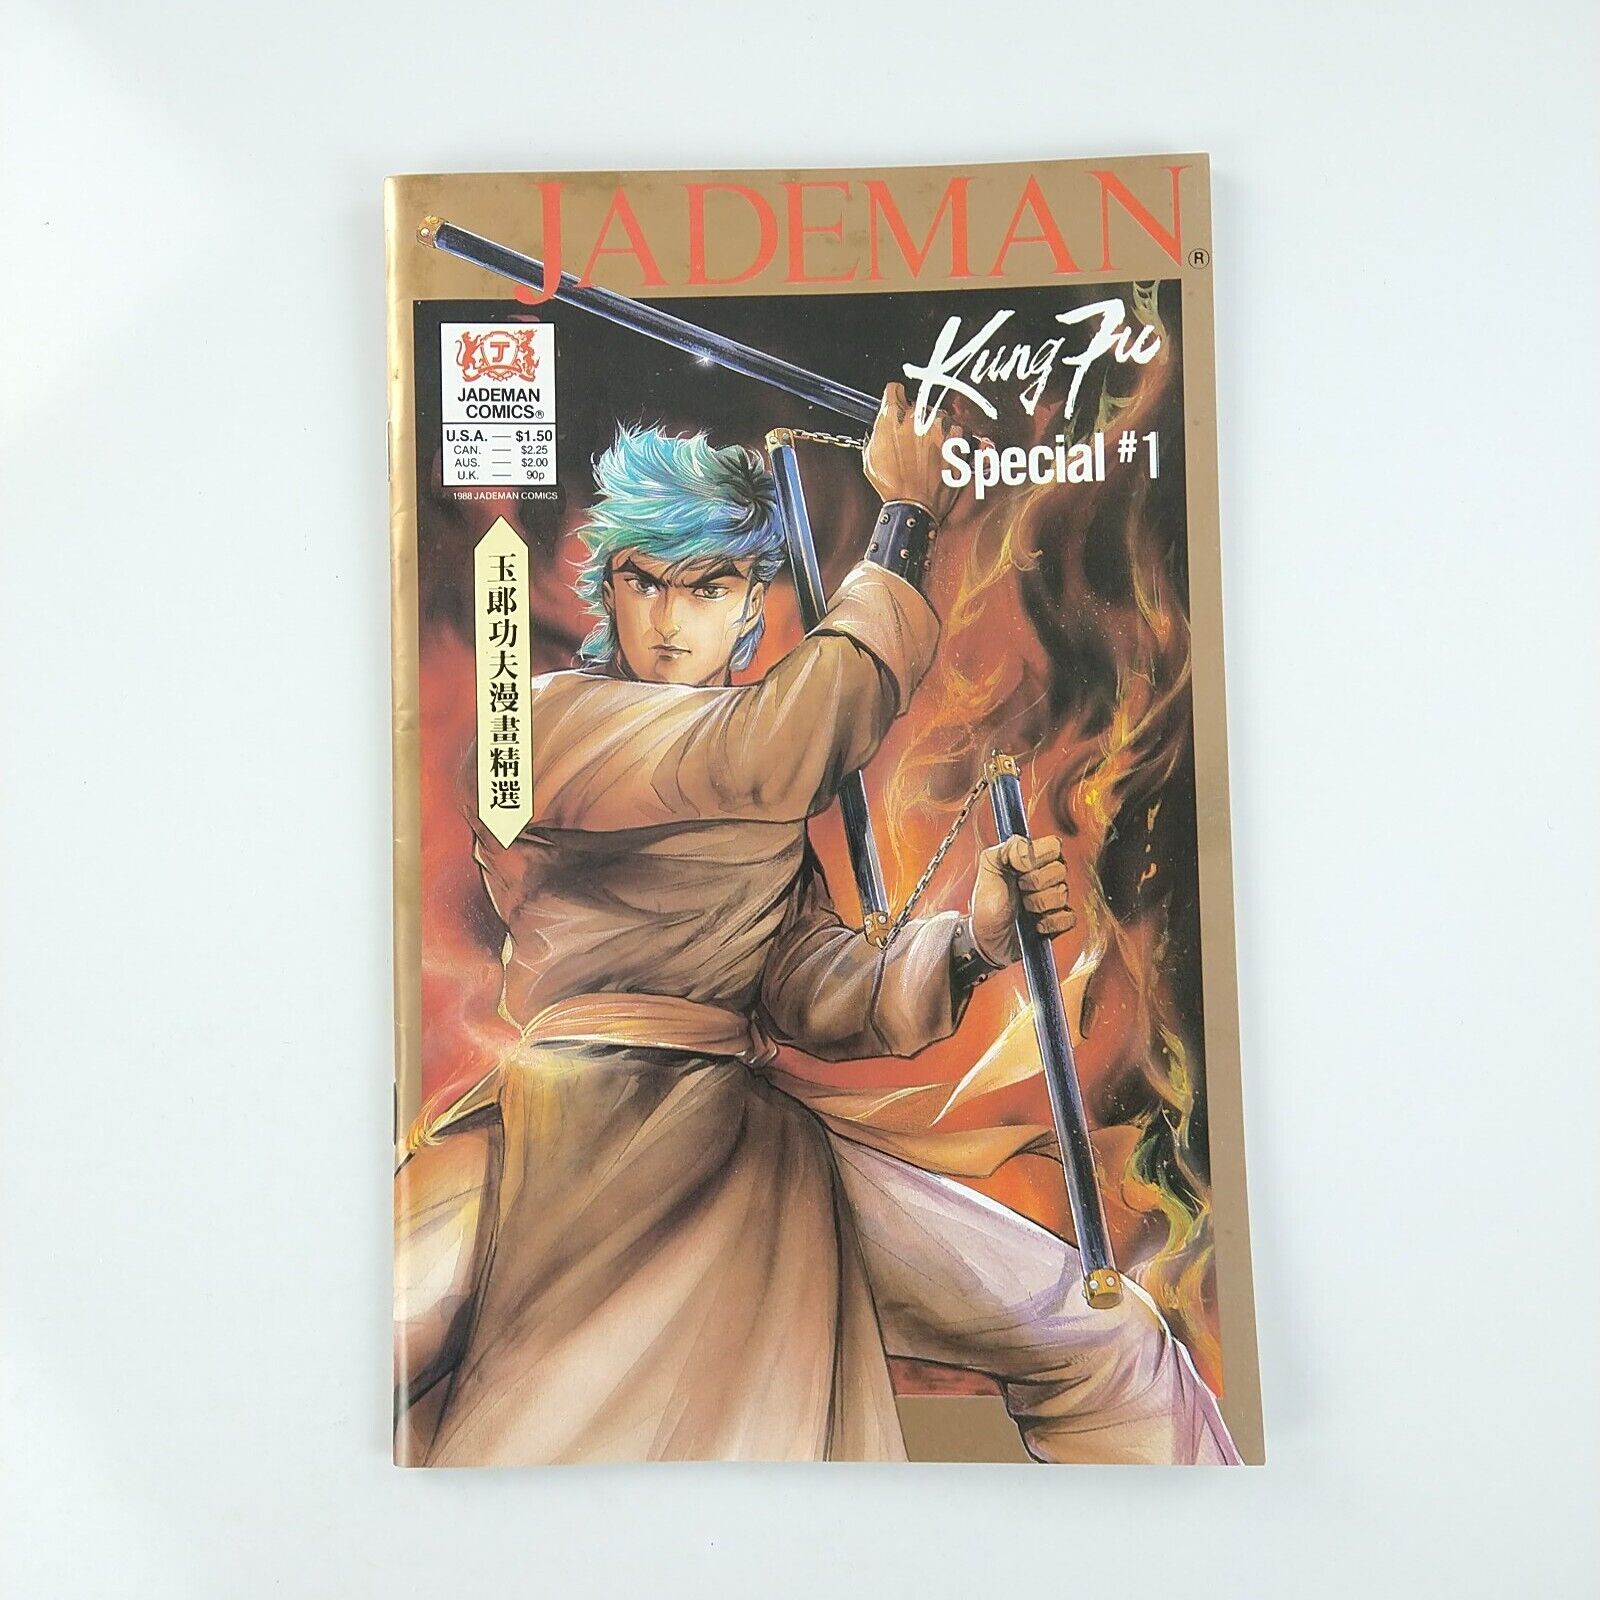 Jademan Kung Fu Special #1 (1988 Jademan Comics)